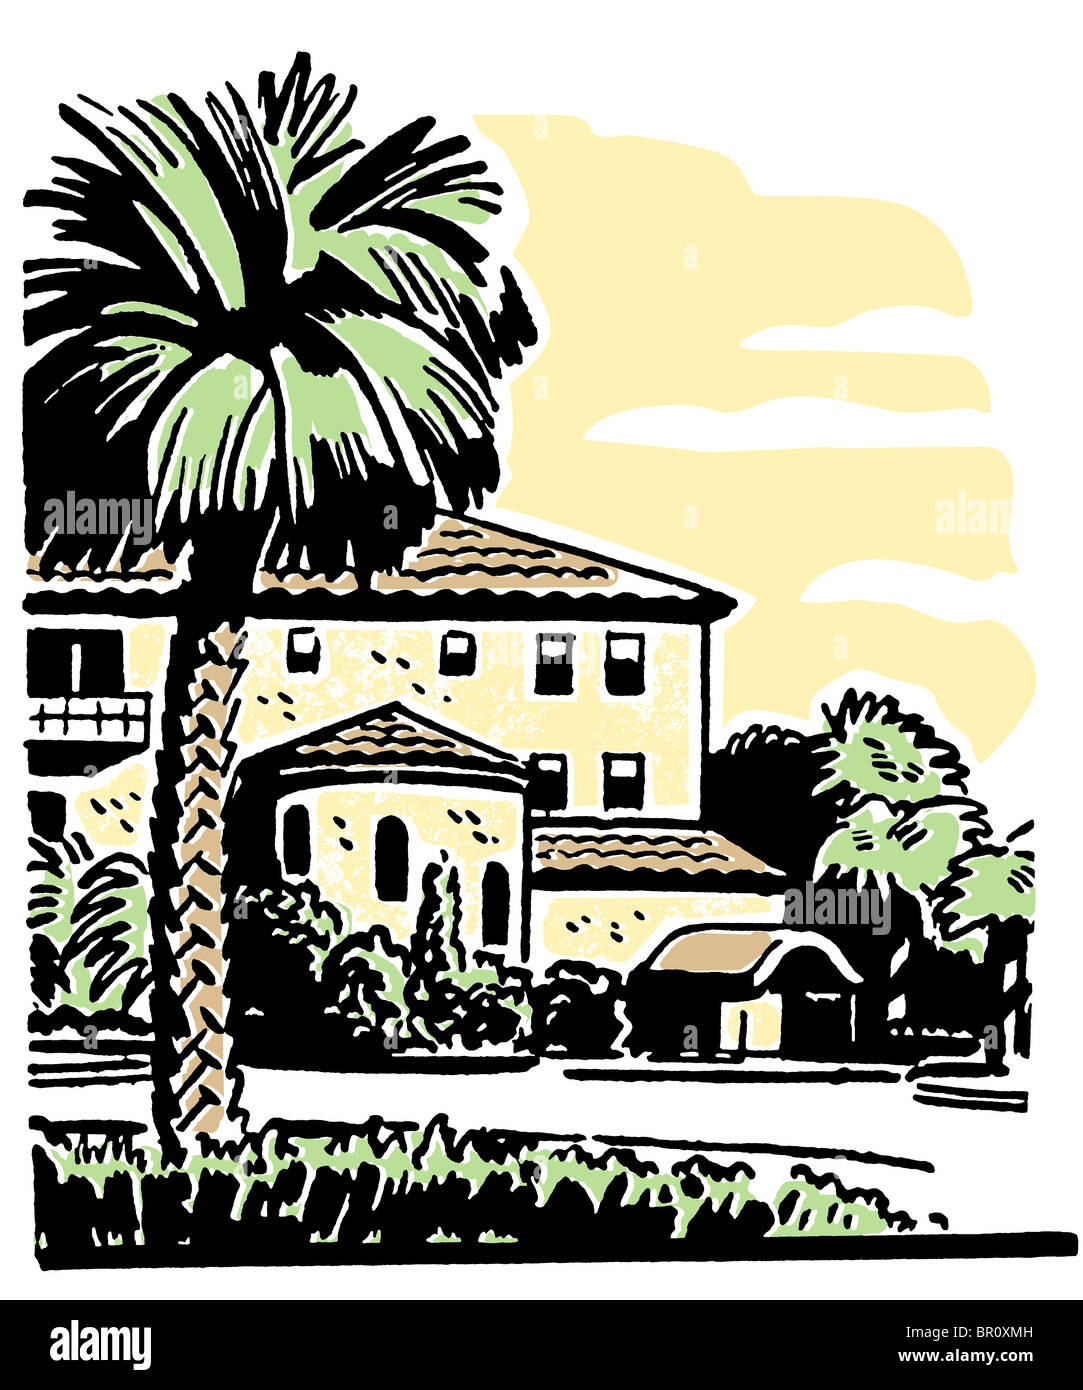 Una illustrazione di una grande casa con un ben stabilito Palm tree nel cortile anteriore Foto Stock